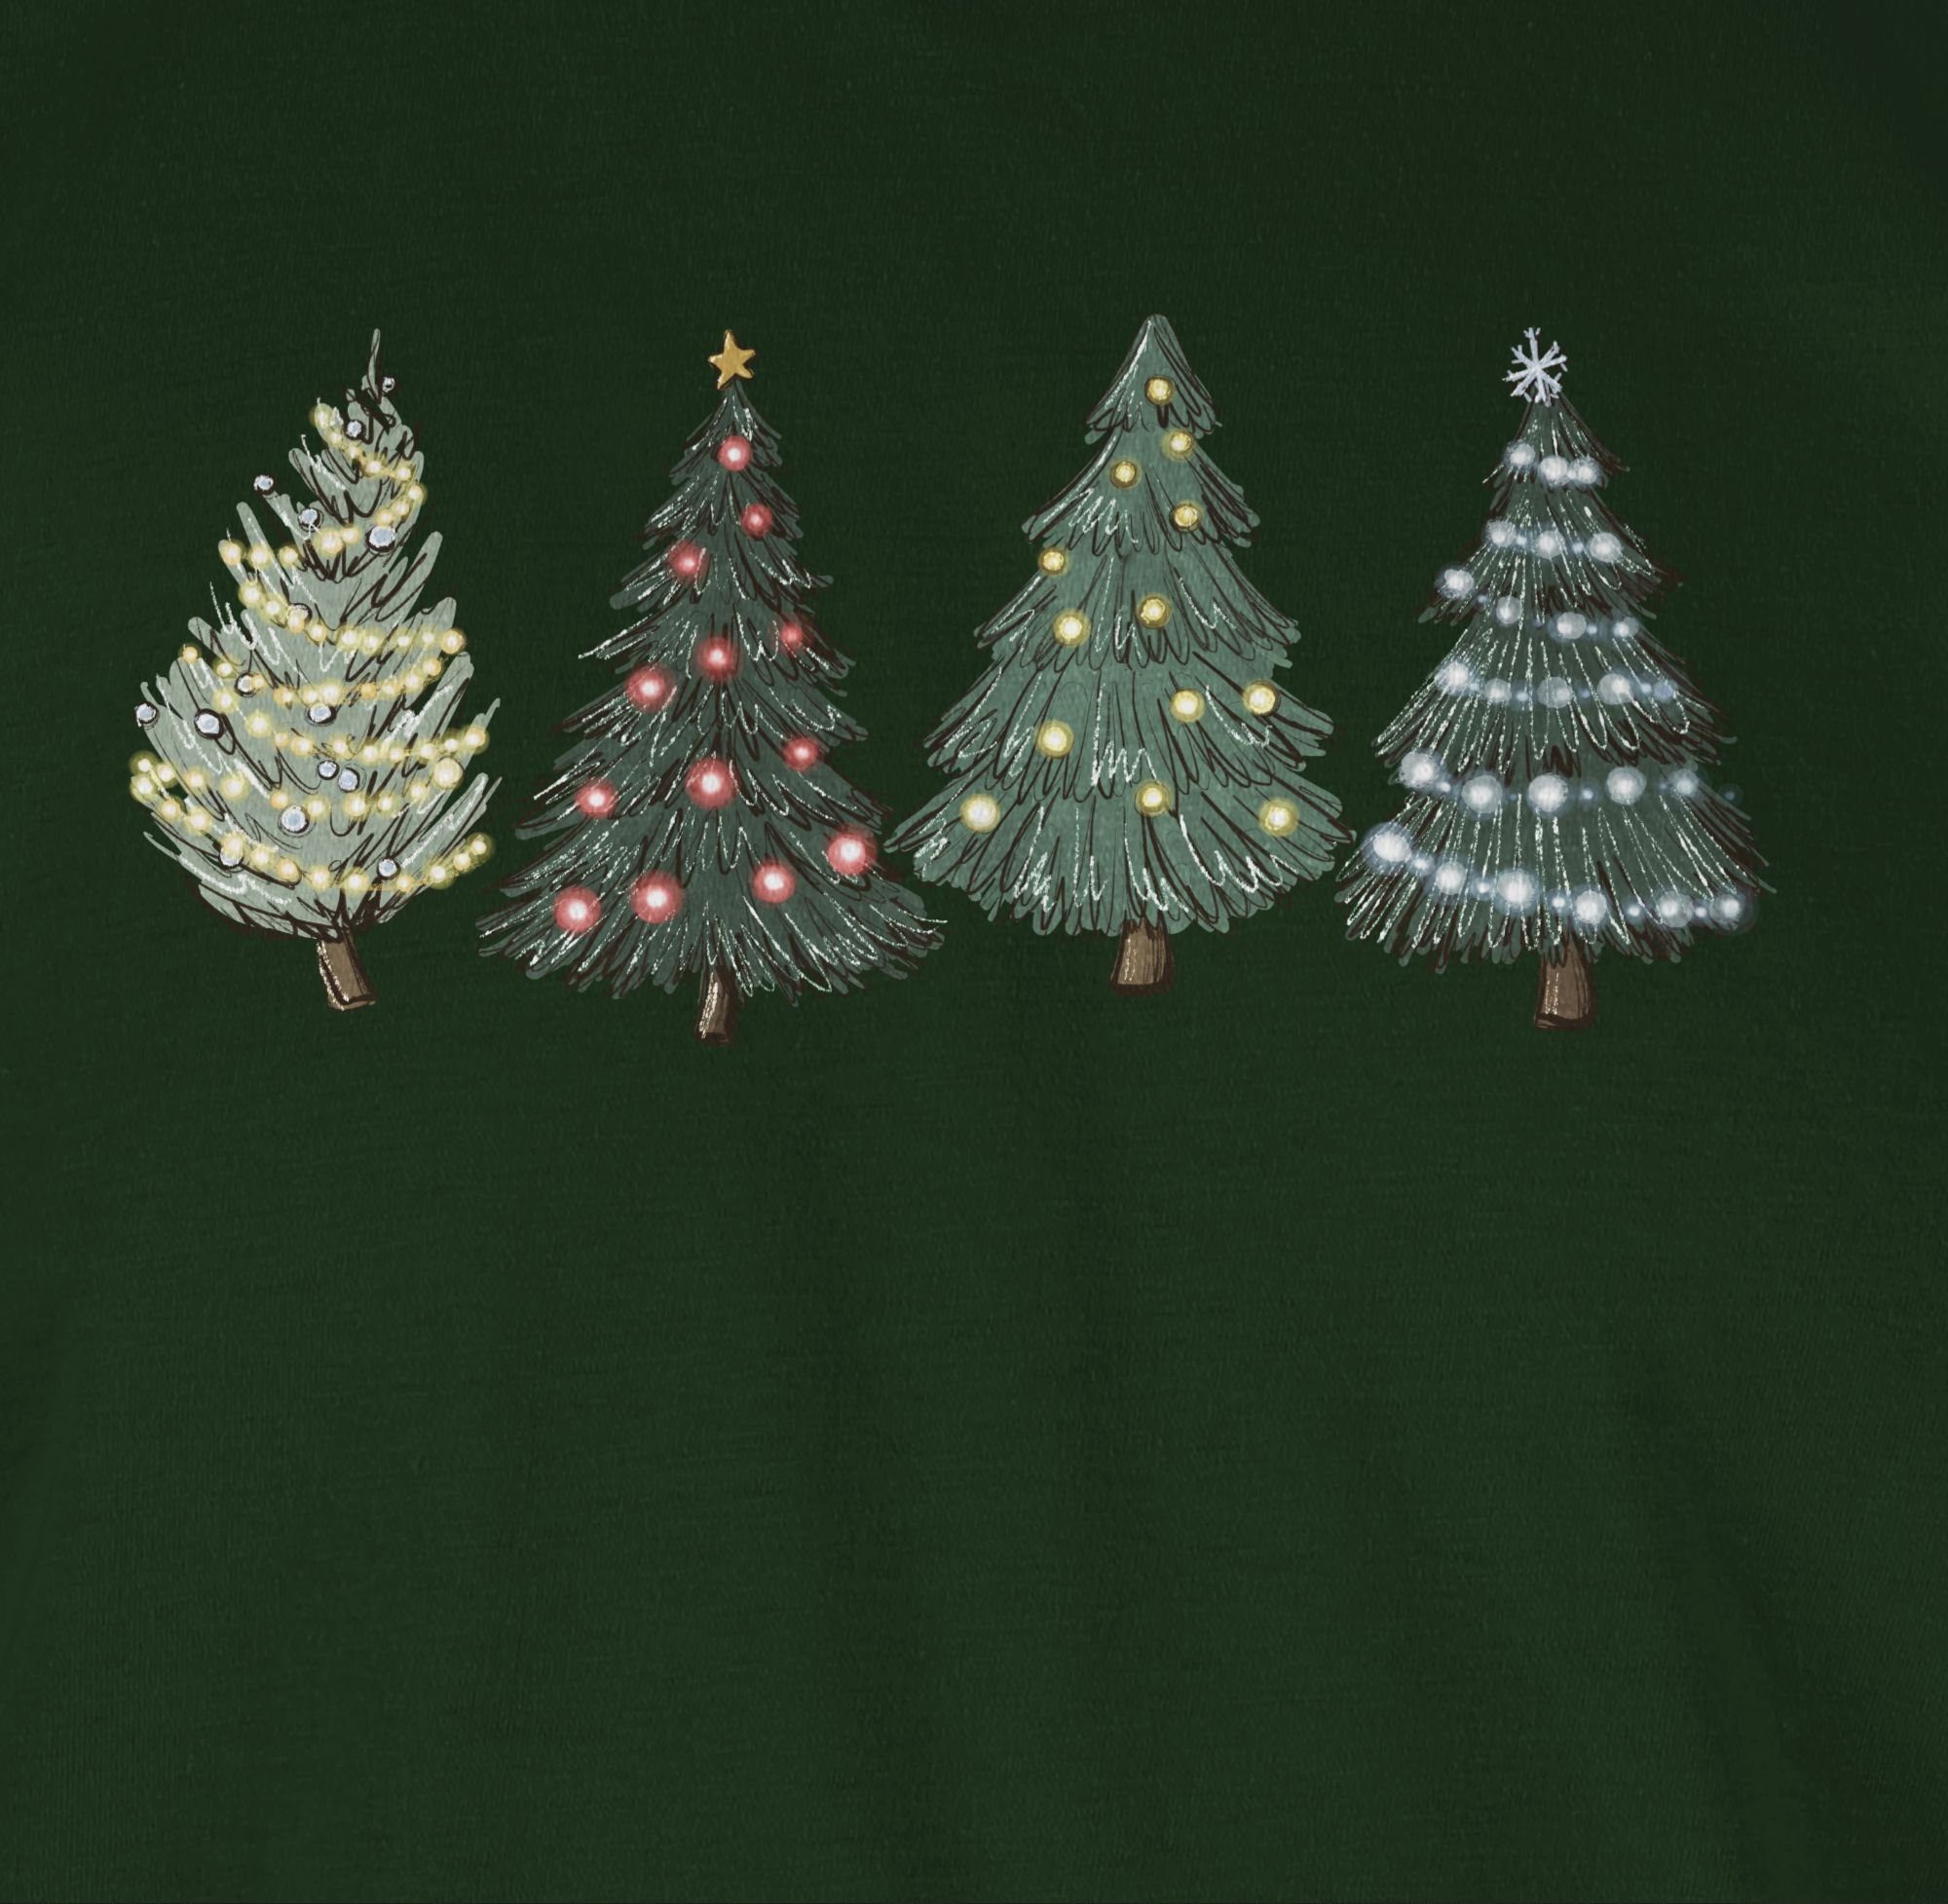 Shirtracer T-Shirt Weihnachtsbäume Weihachten Kleidung Dunkelgrün 03